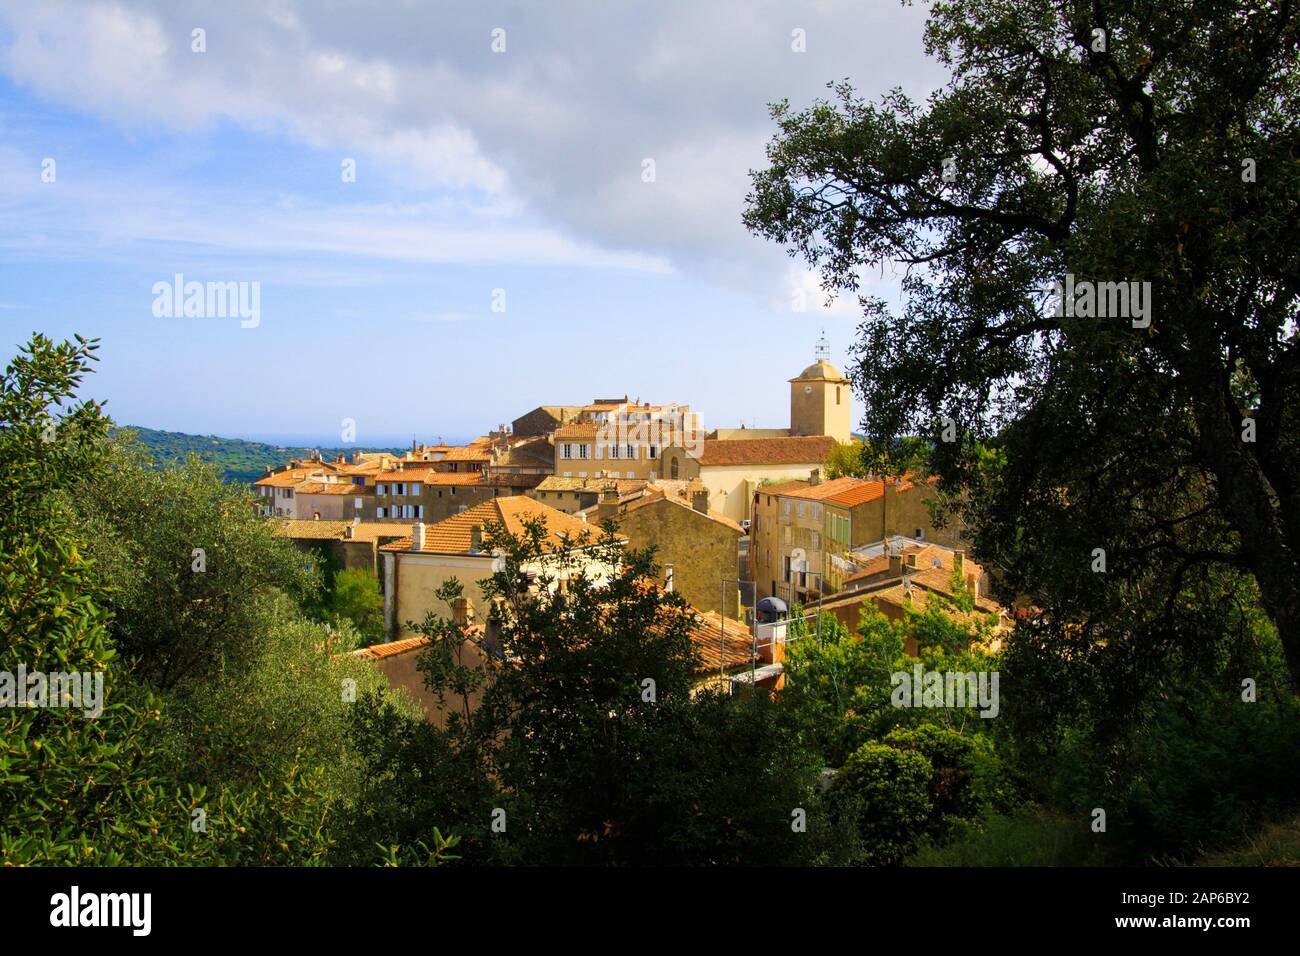 Vue panoramique au-delà des arbres sur le village médiéval méditerranéen français avec tour d'église sur le sommet de la colline - Ramatuelle, Côte d'Azur, France Banque D'Images